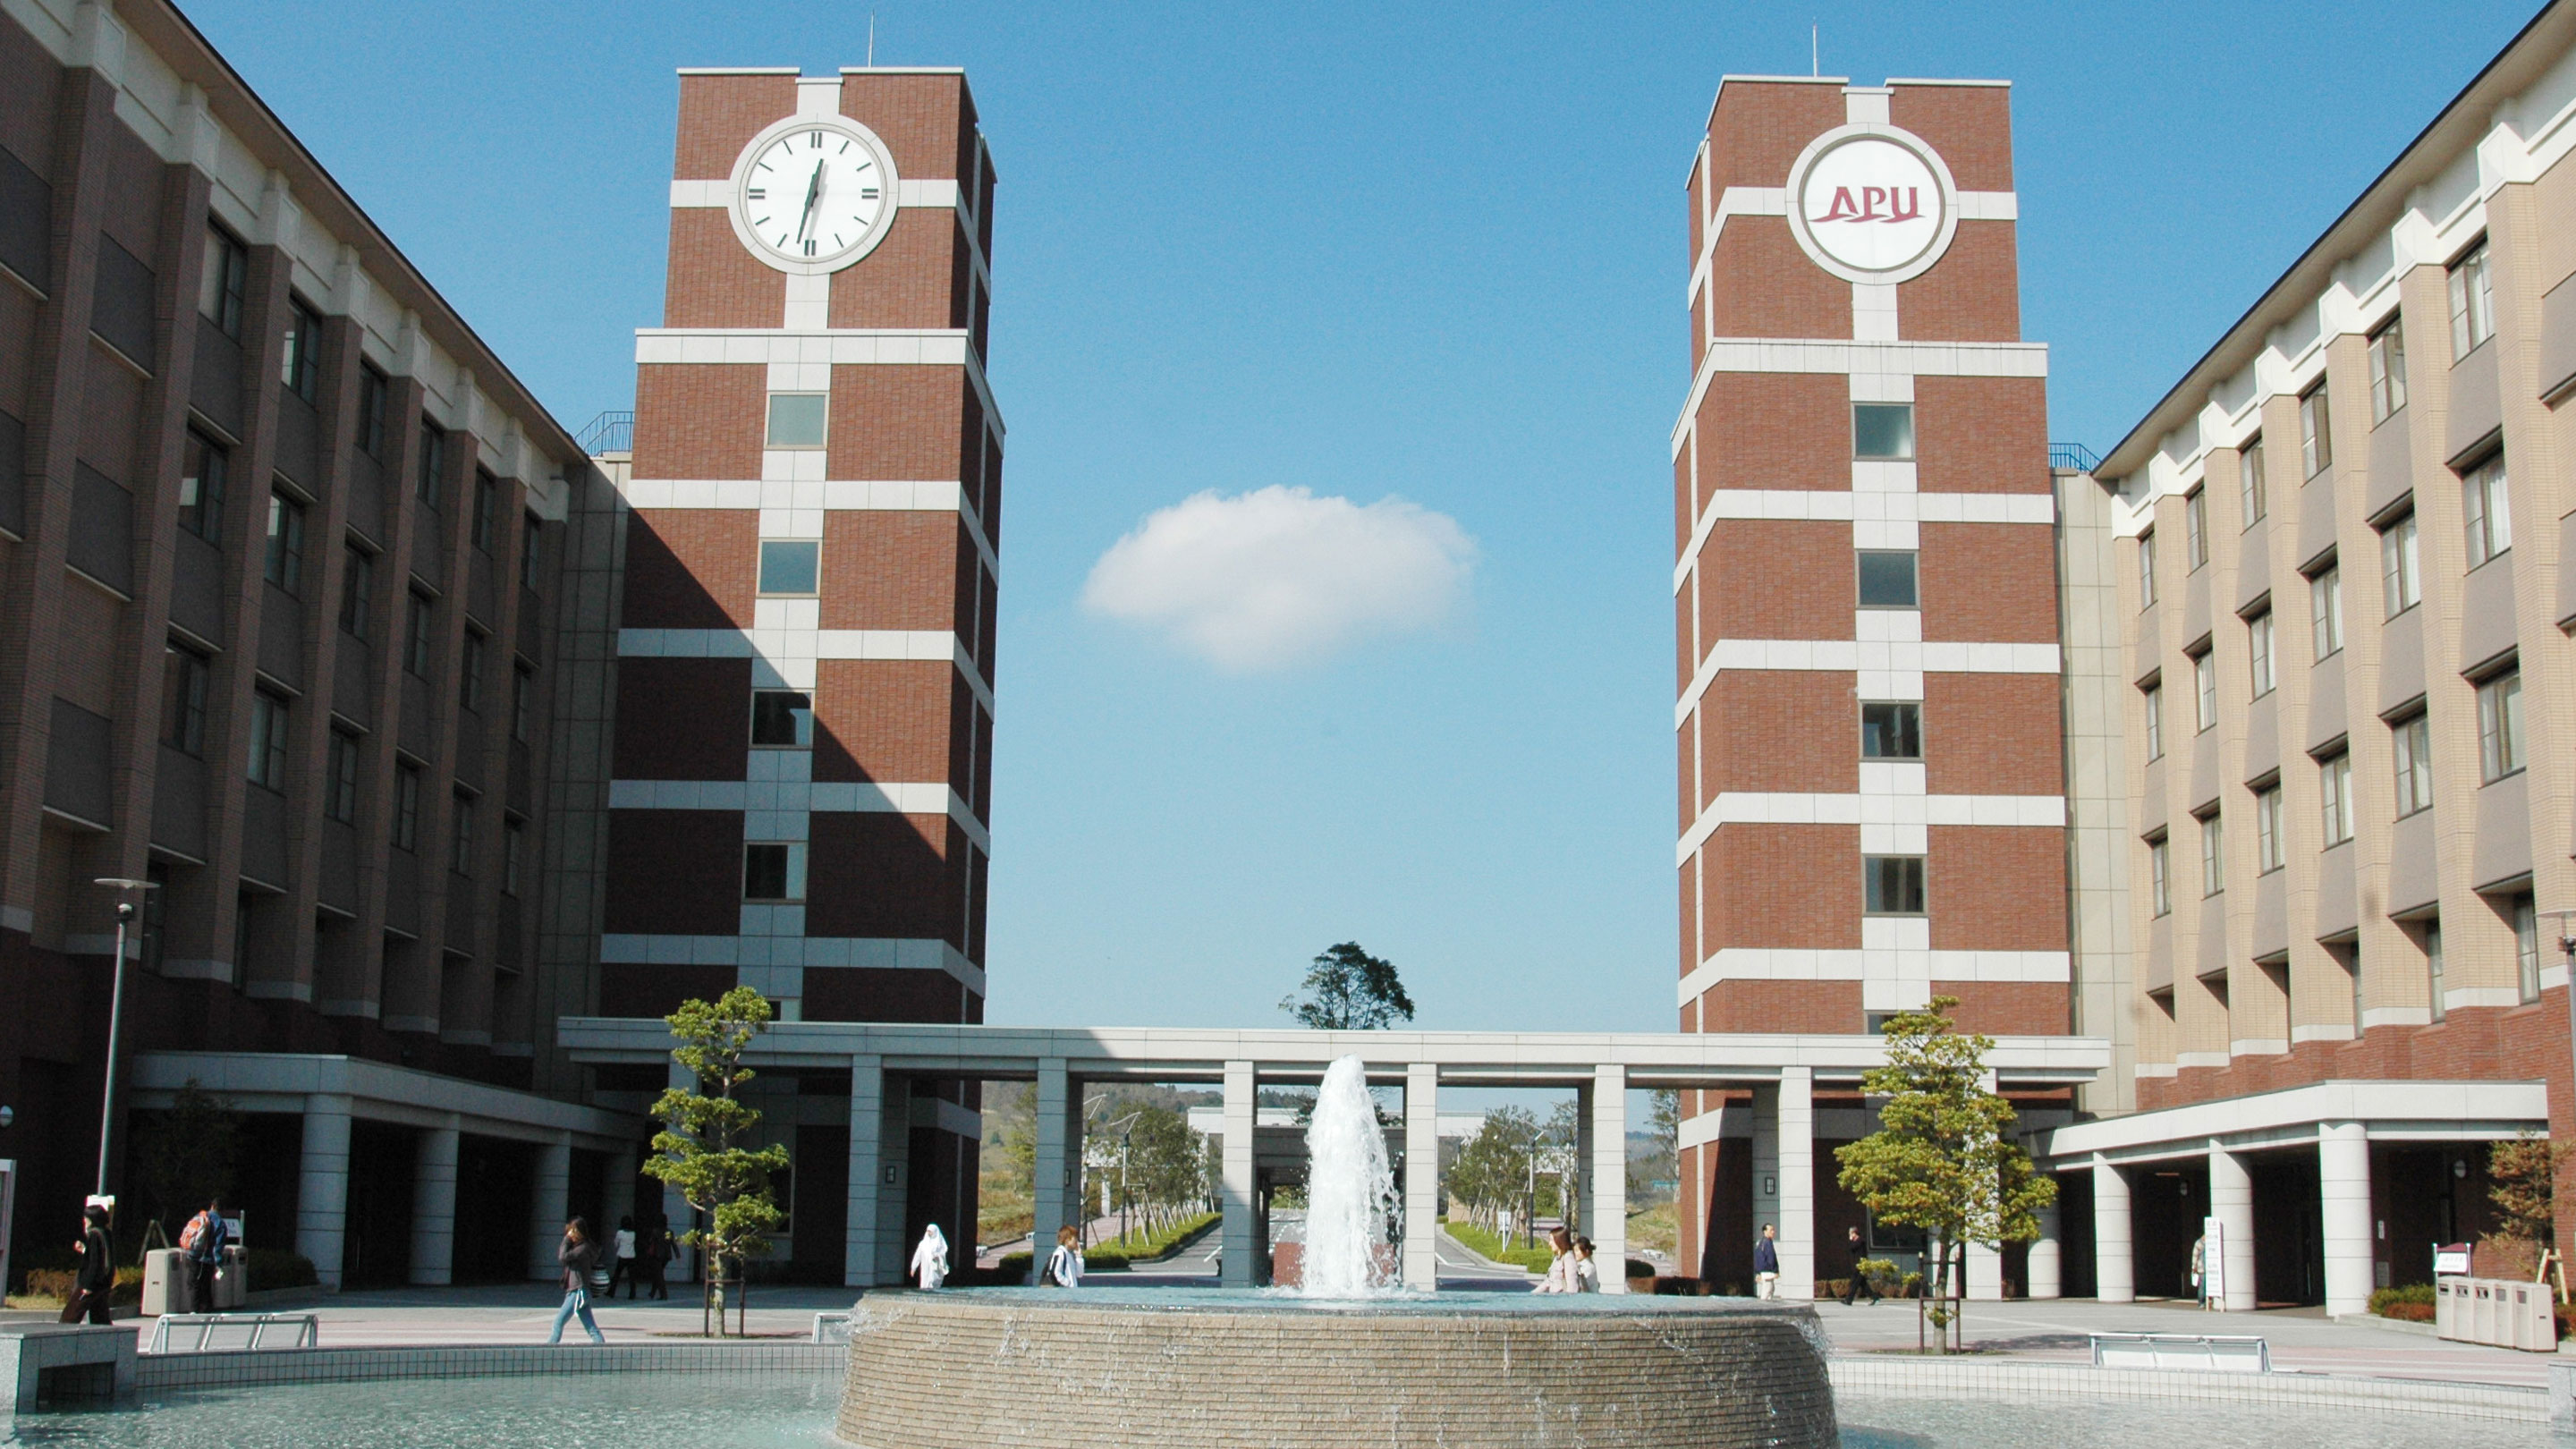 Ritsumeikan Asia Pacific University Beppu Japan - Top University of Asia